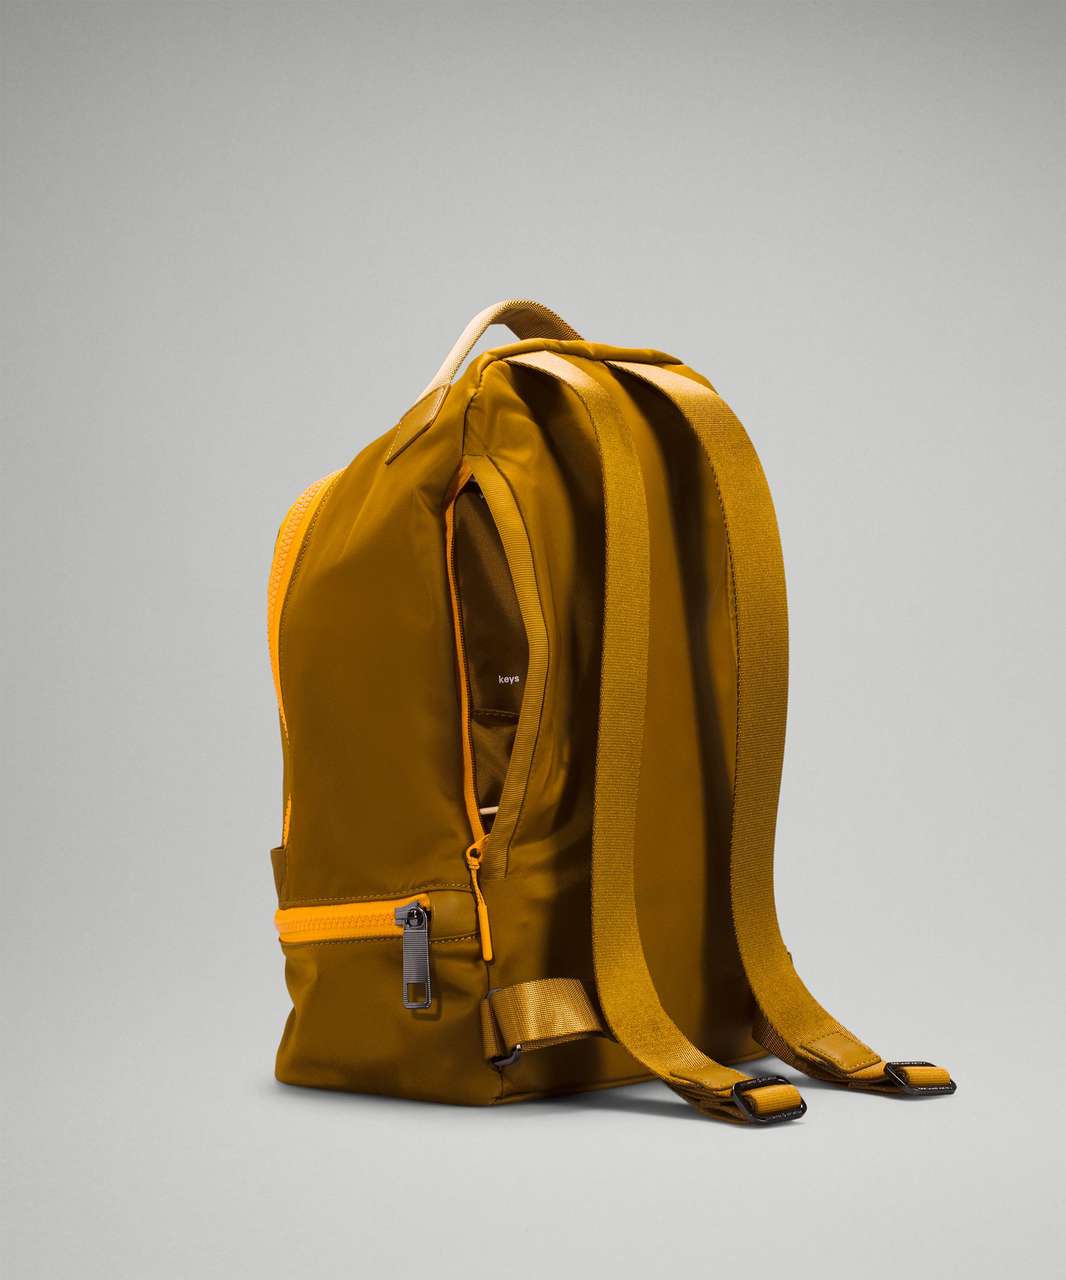 Lululemon City Adventurer Backpack 10L - Gold Spice